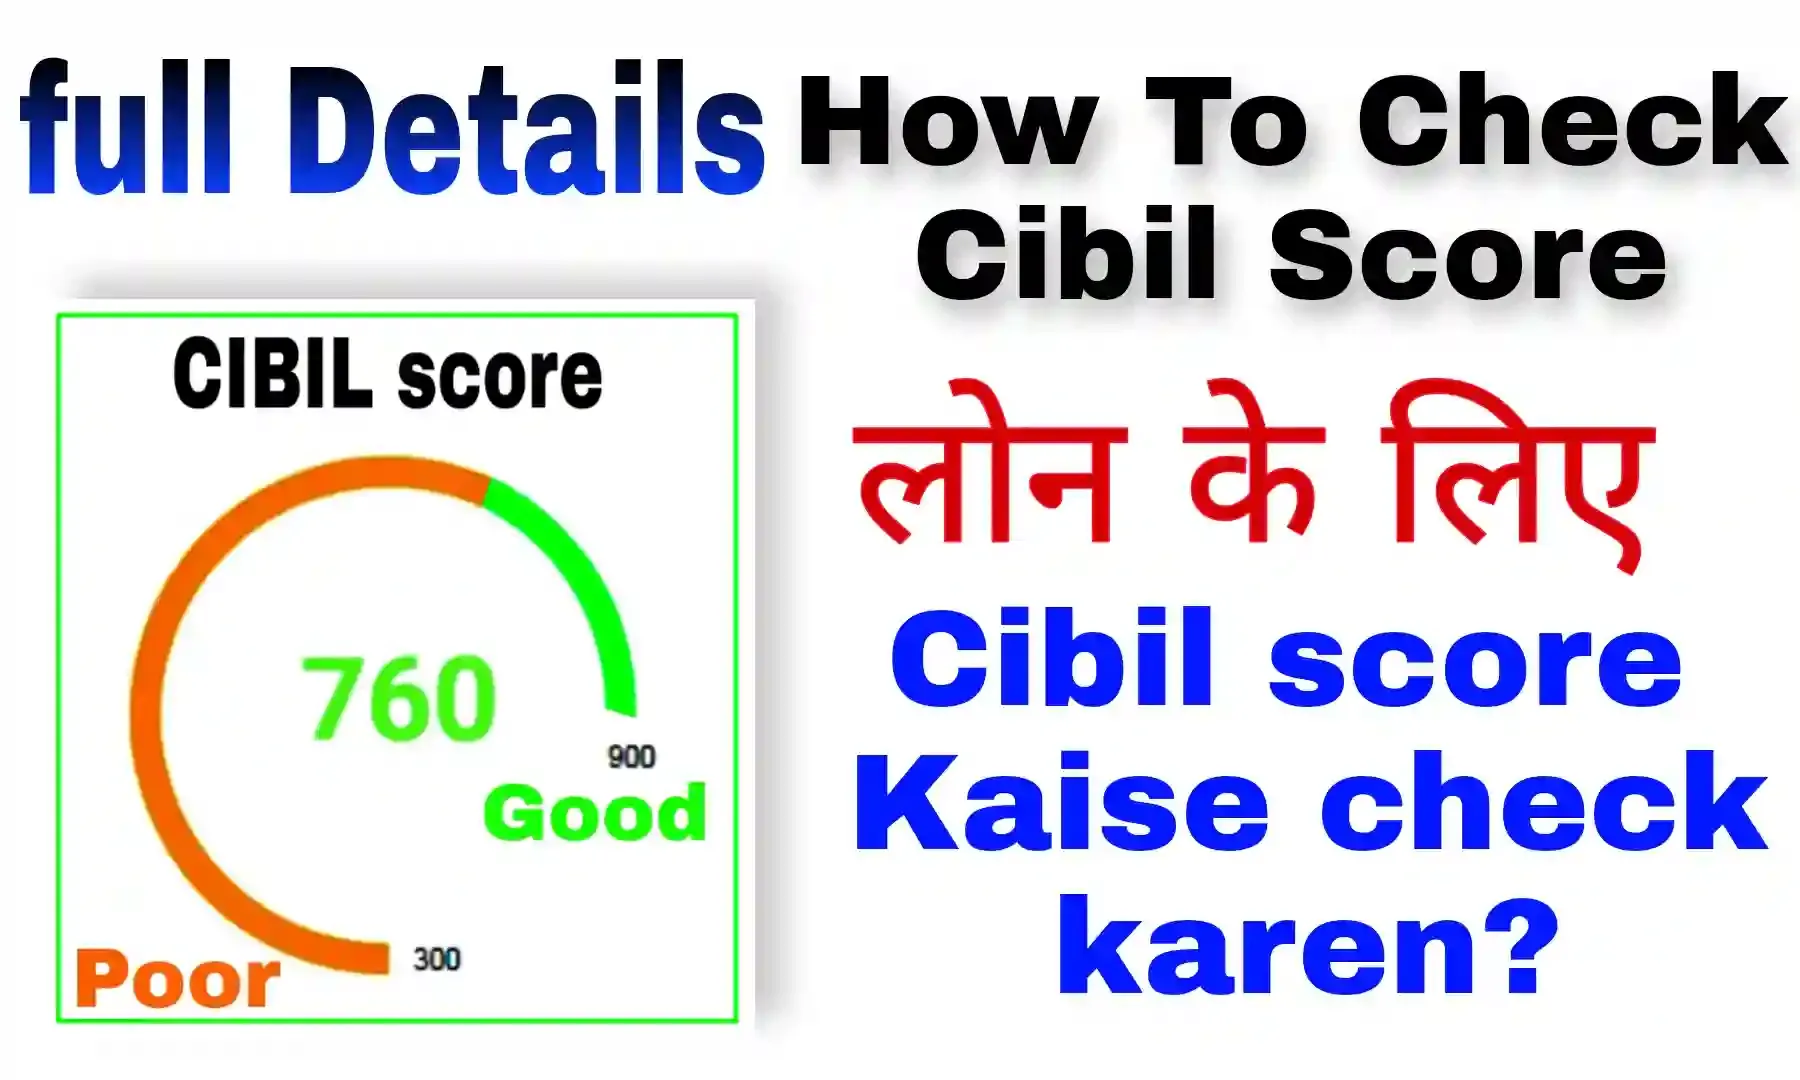 How to check Cibil score